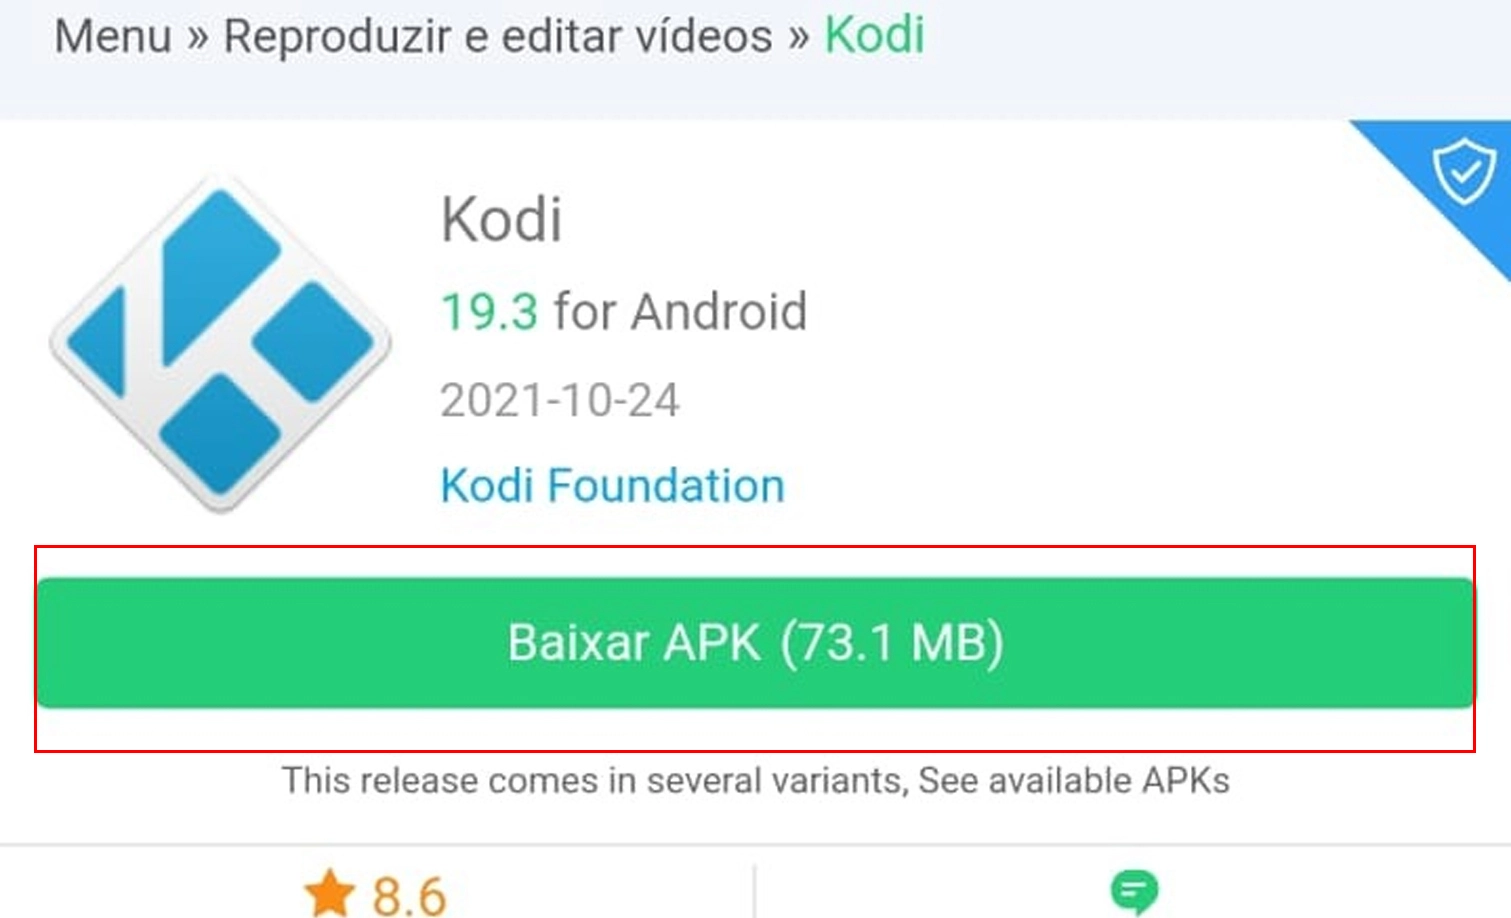 Faça o download do APK pelo site e aprenda como instalar o Kodi (Imagem: Nalbert/Tekimobile)